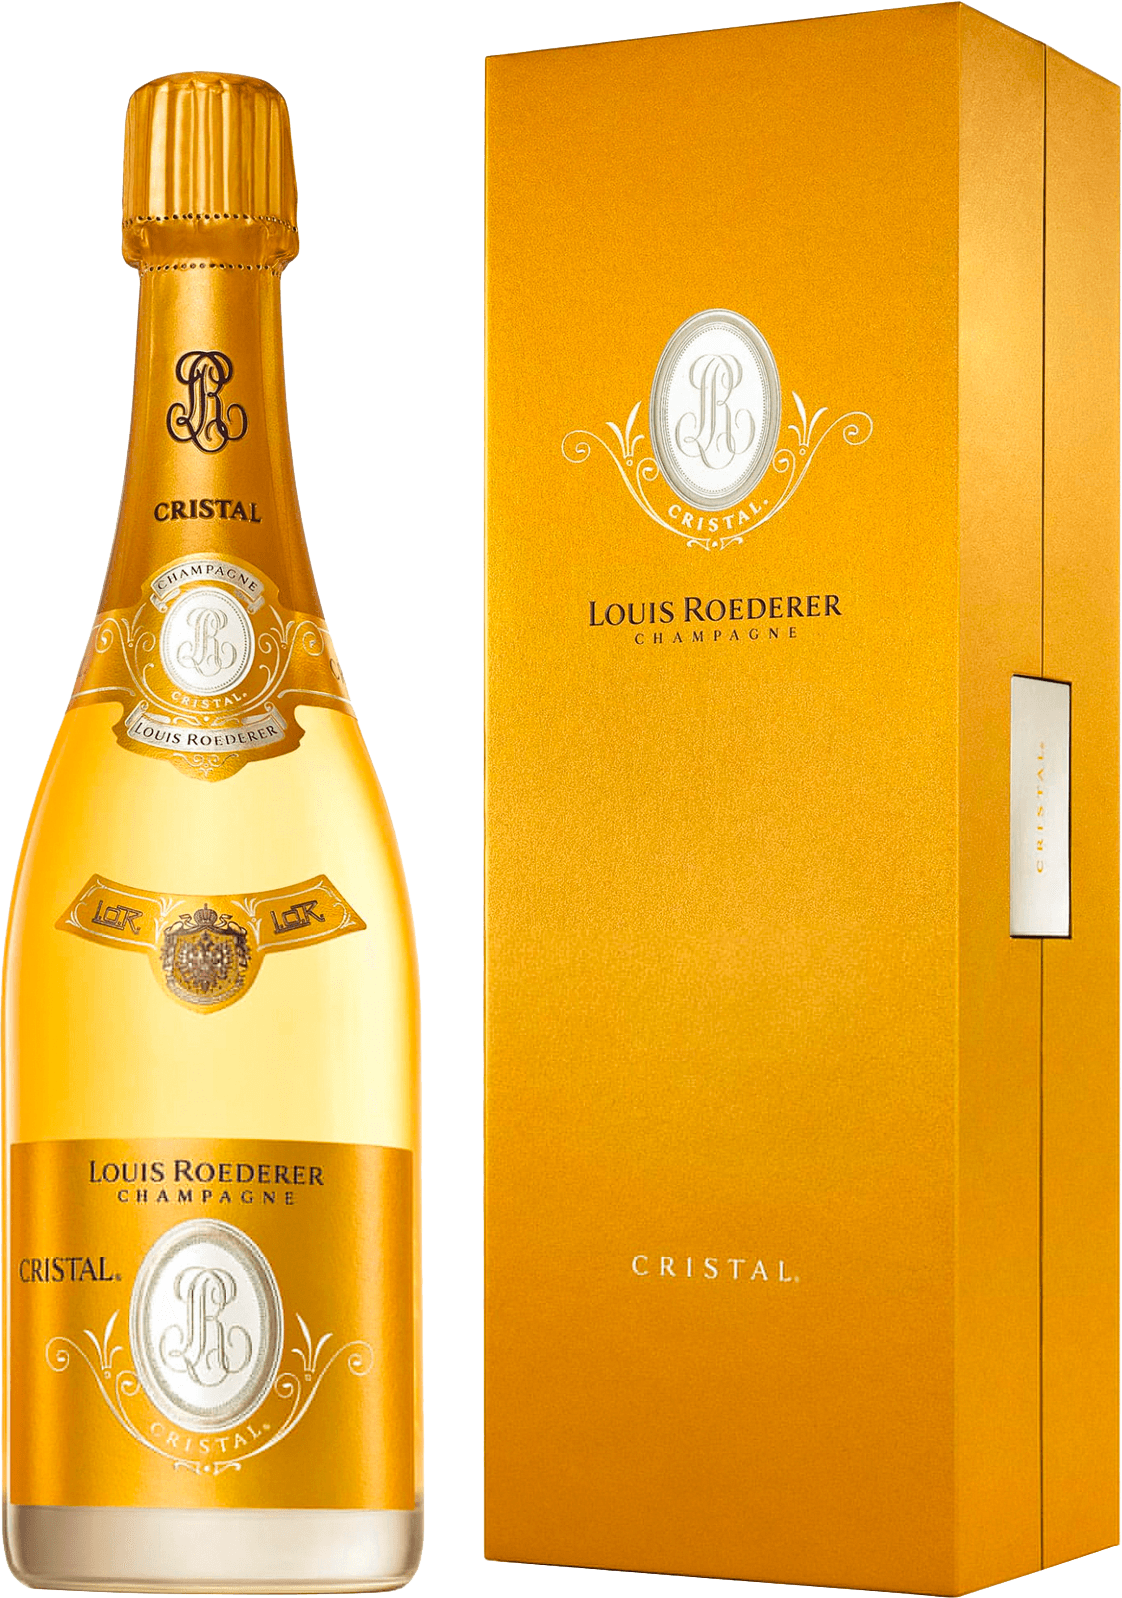 Cristal roederer en coffret 2006  Roederer, Champagne